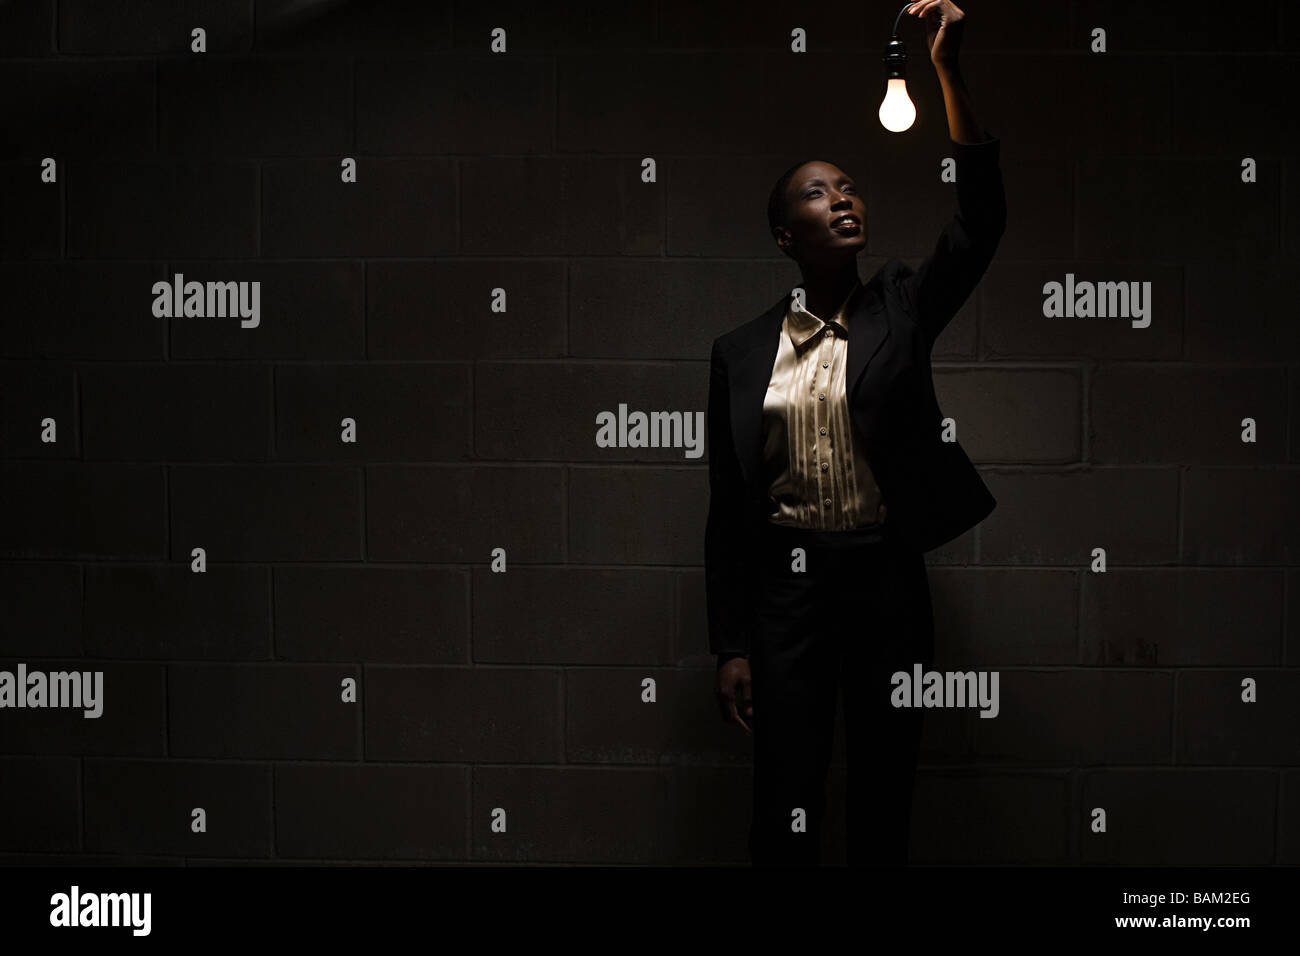 Businesswoman holding lightbulb Stock Photo